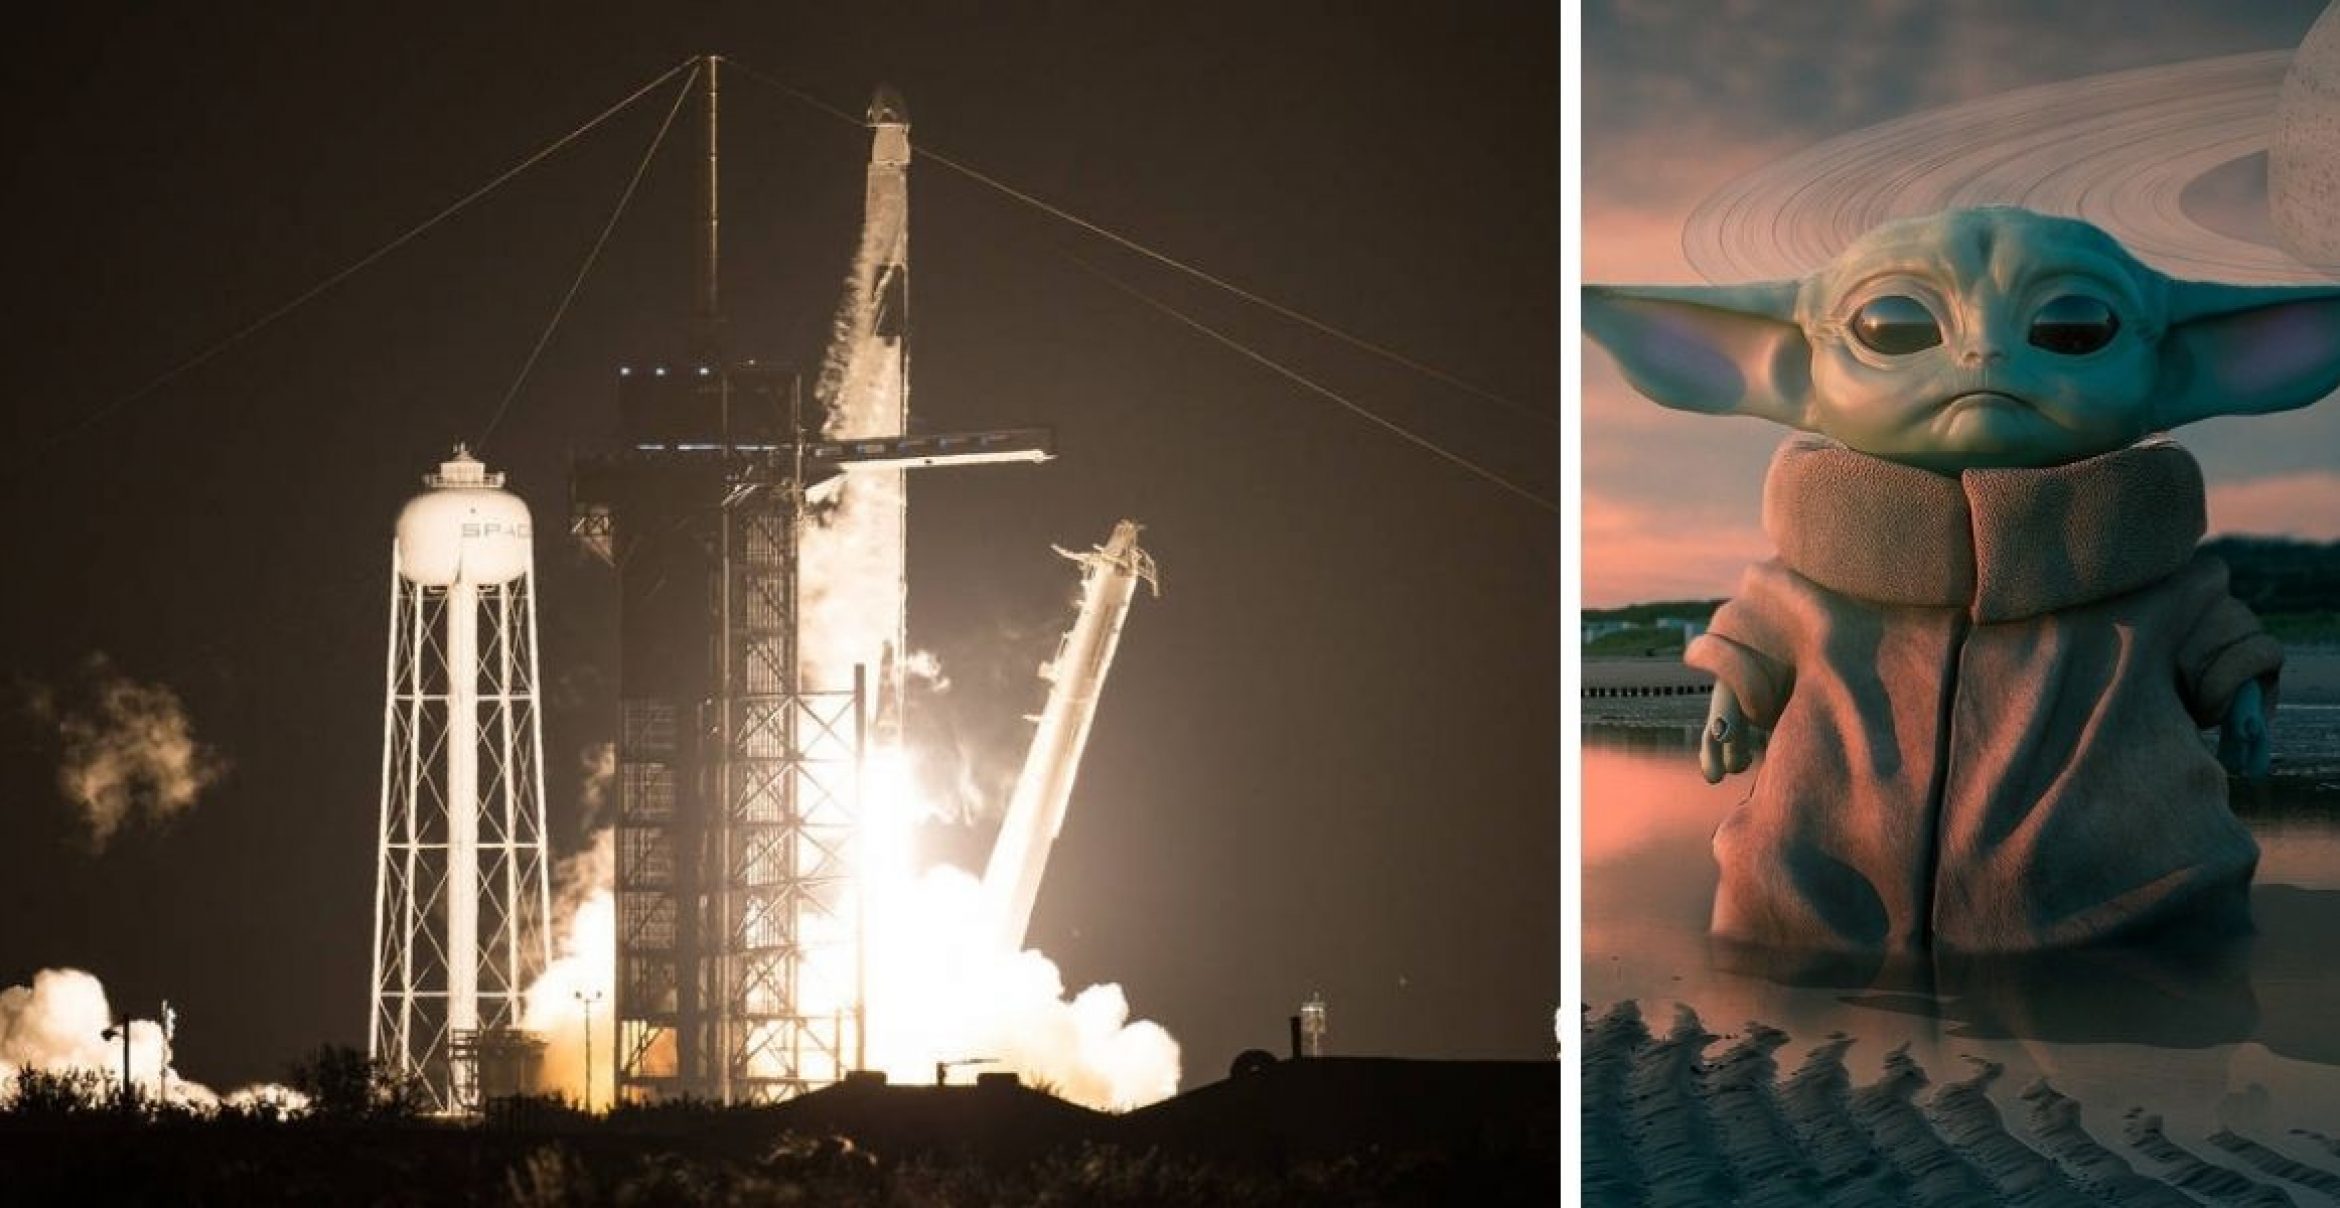 Astronaut*innen fliegen mit SpaceX-Raumschiff zur ISS – warum haben sie Baby-Yoda-Figur dabei?